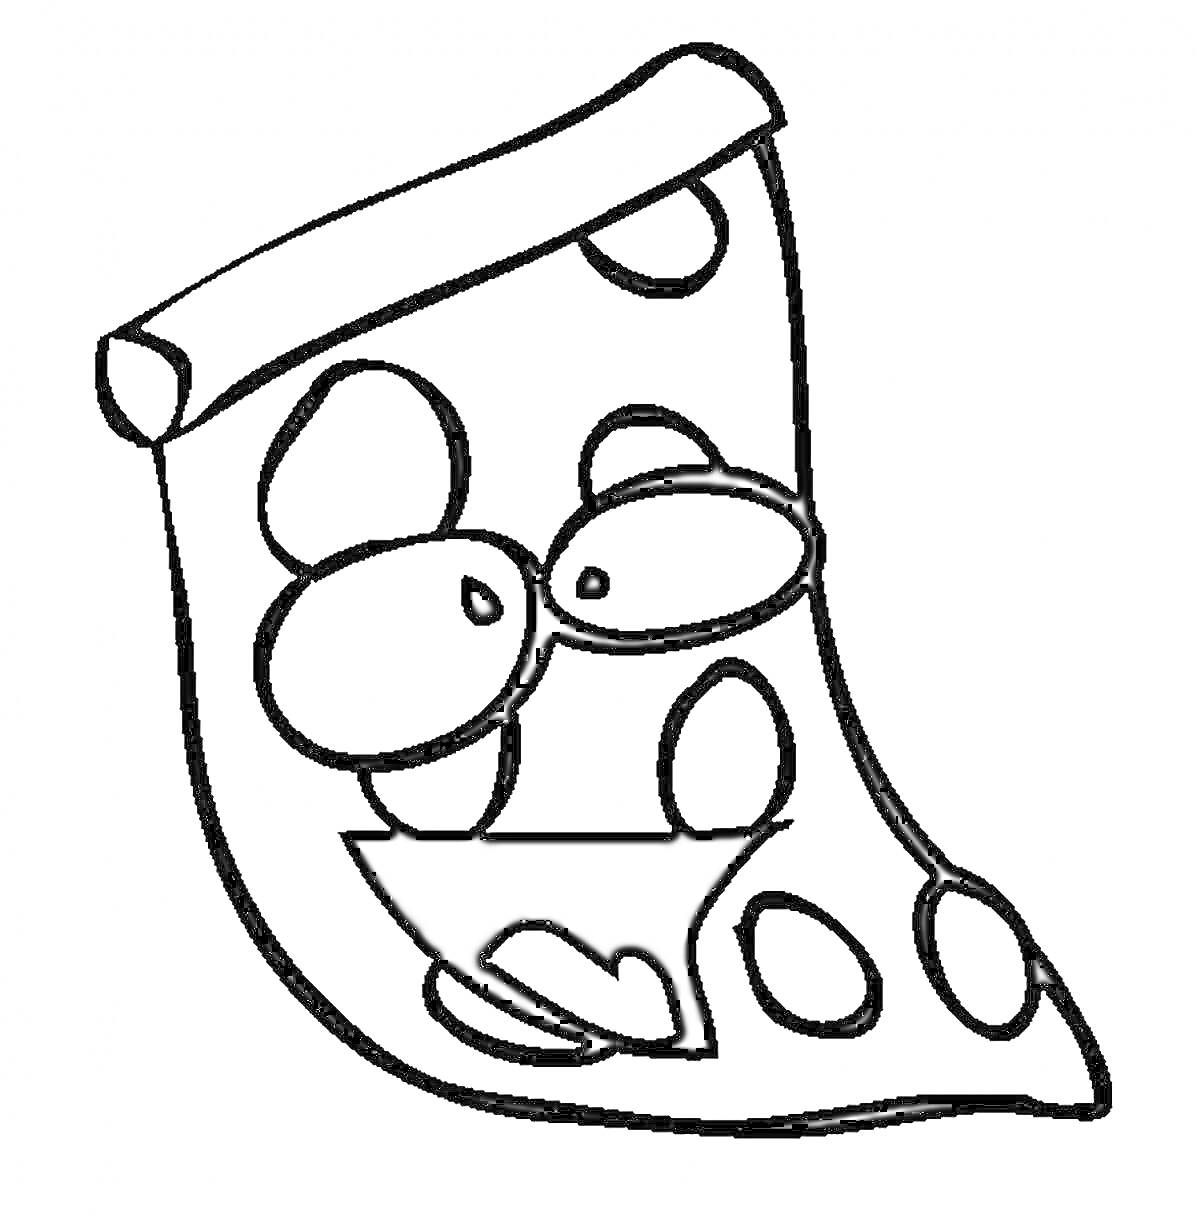 Ломтик пиццы с глазами и улыбкой, с круглыми элементами, похожими на сыр или колбасу